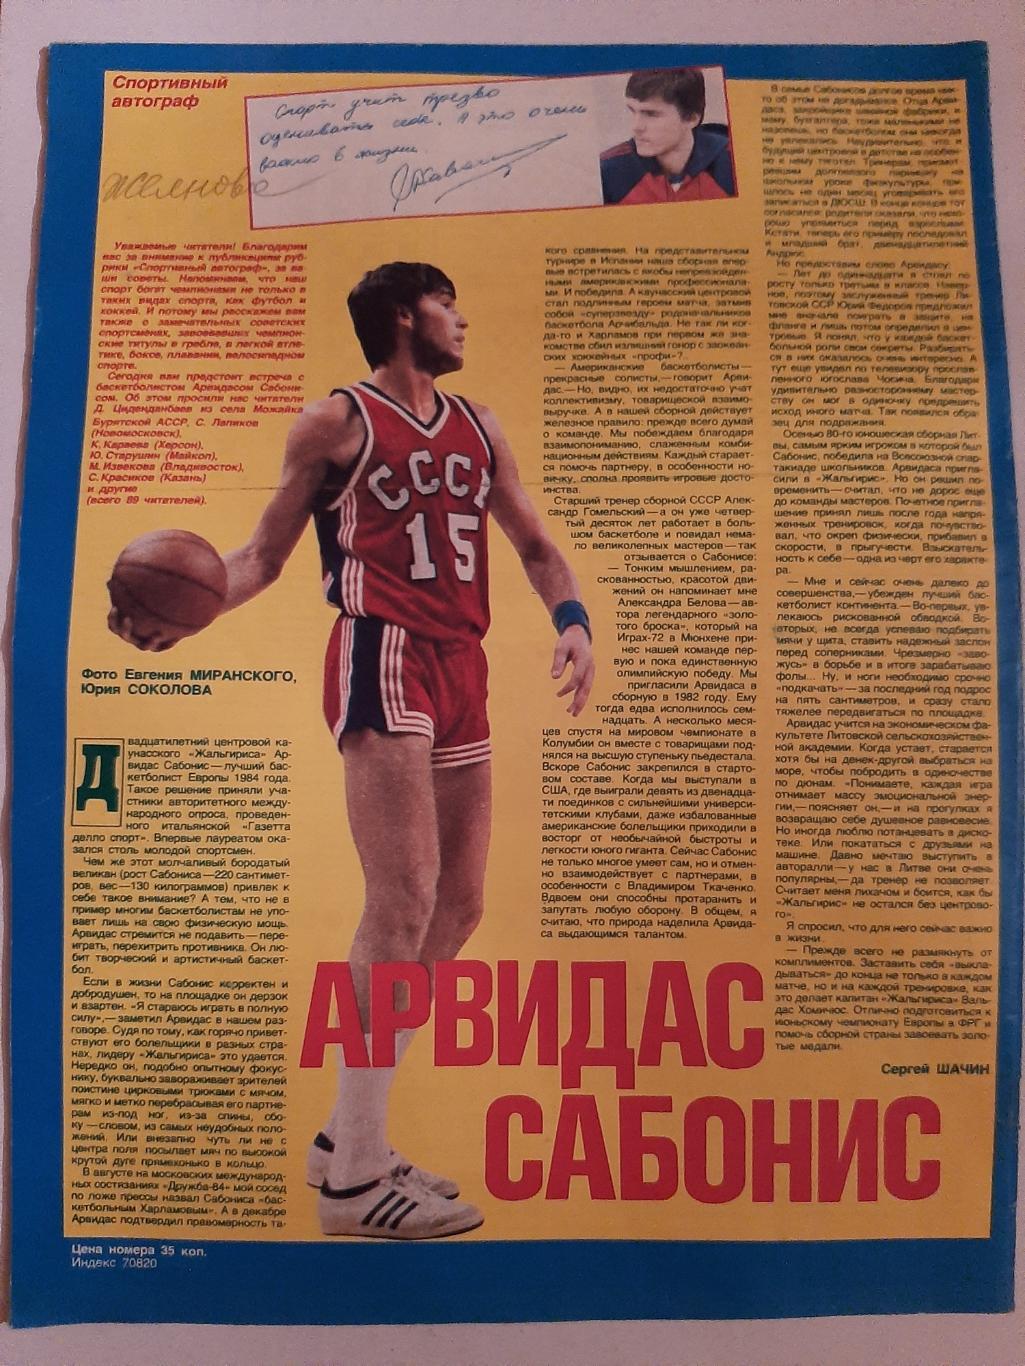 Журнал Смена 1985. Арвидас Сабонис. Баскетбол 1